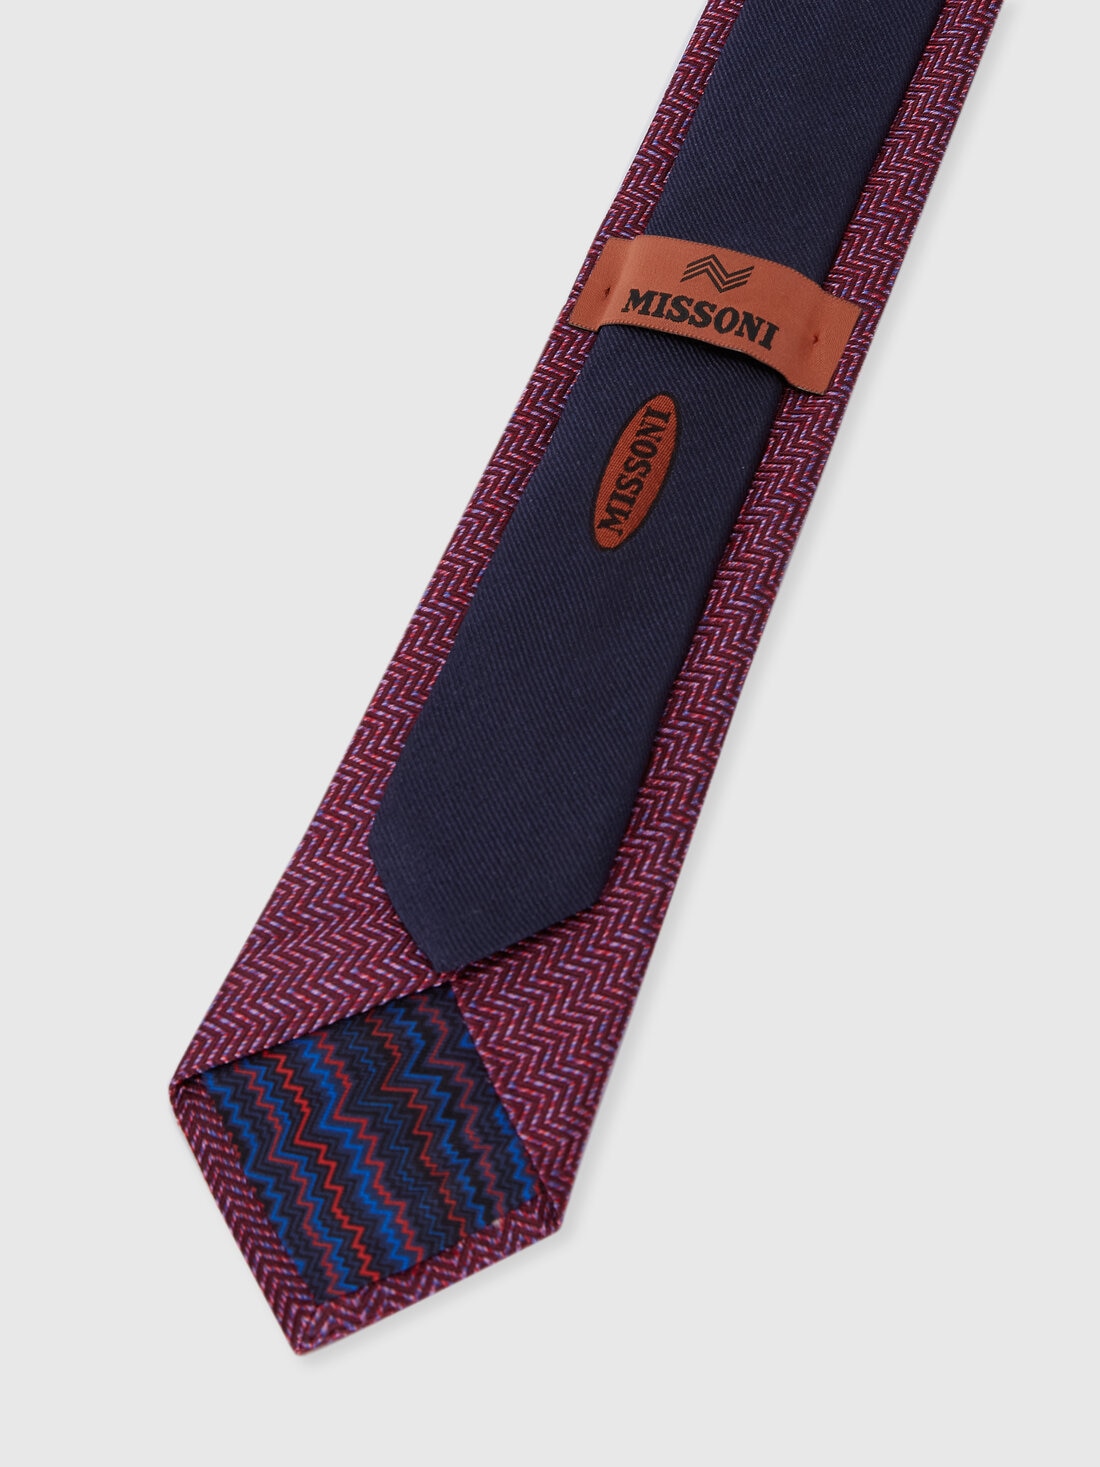 Cravate en soie à chevrons, Multicolore  - 8053147141947 - 2